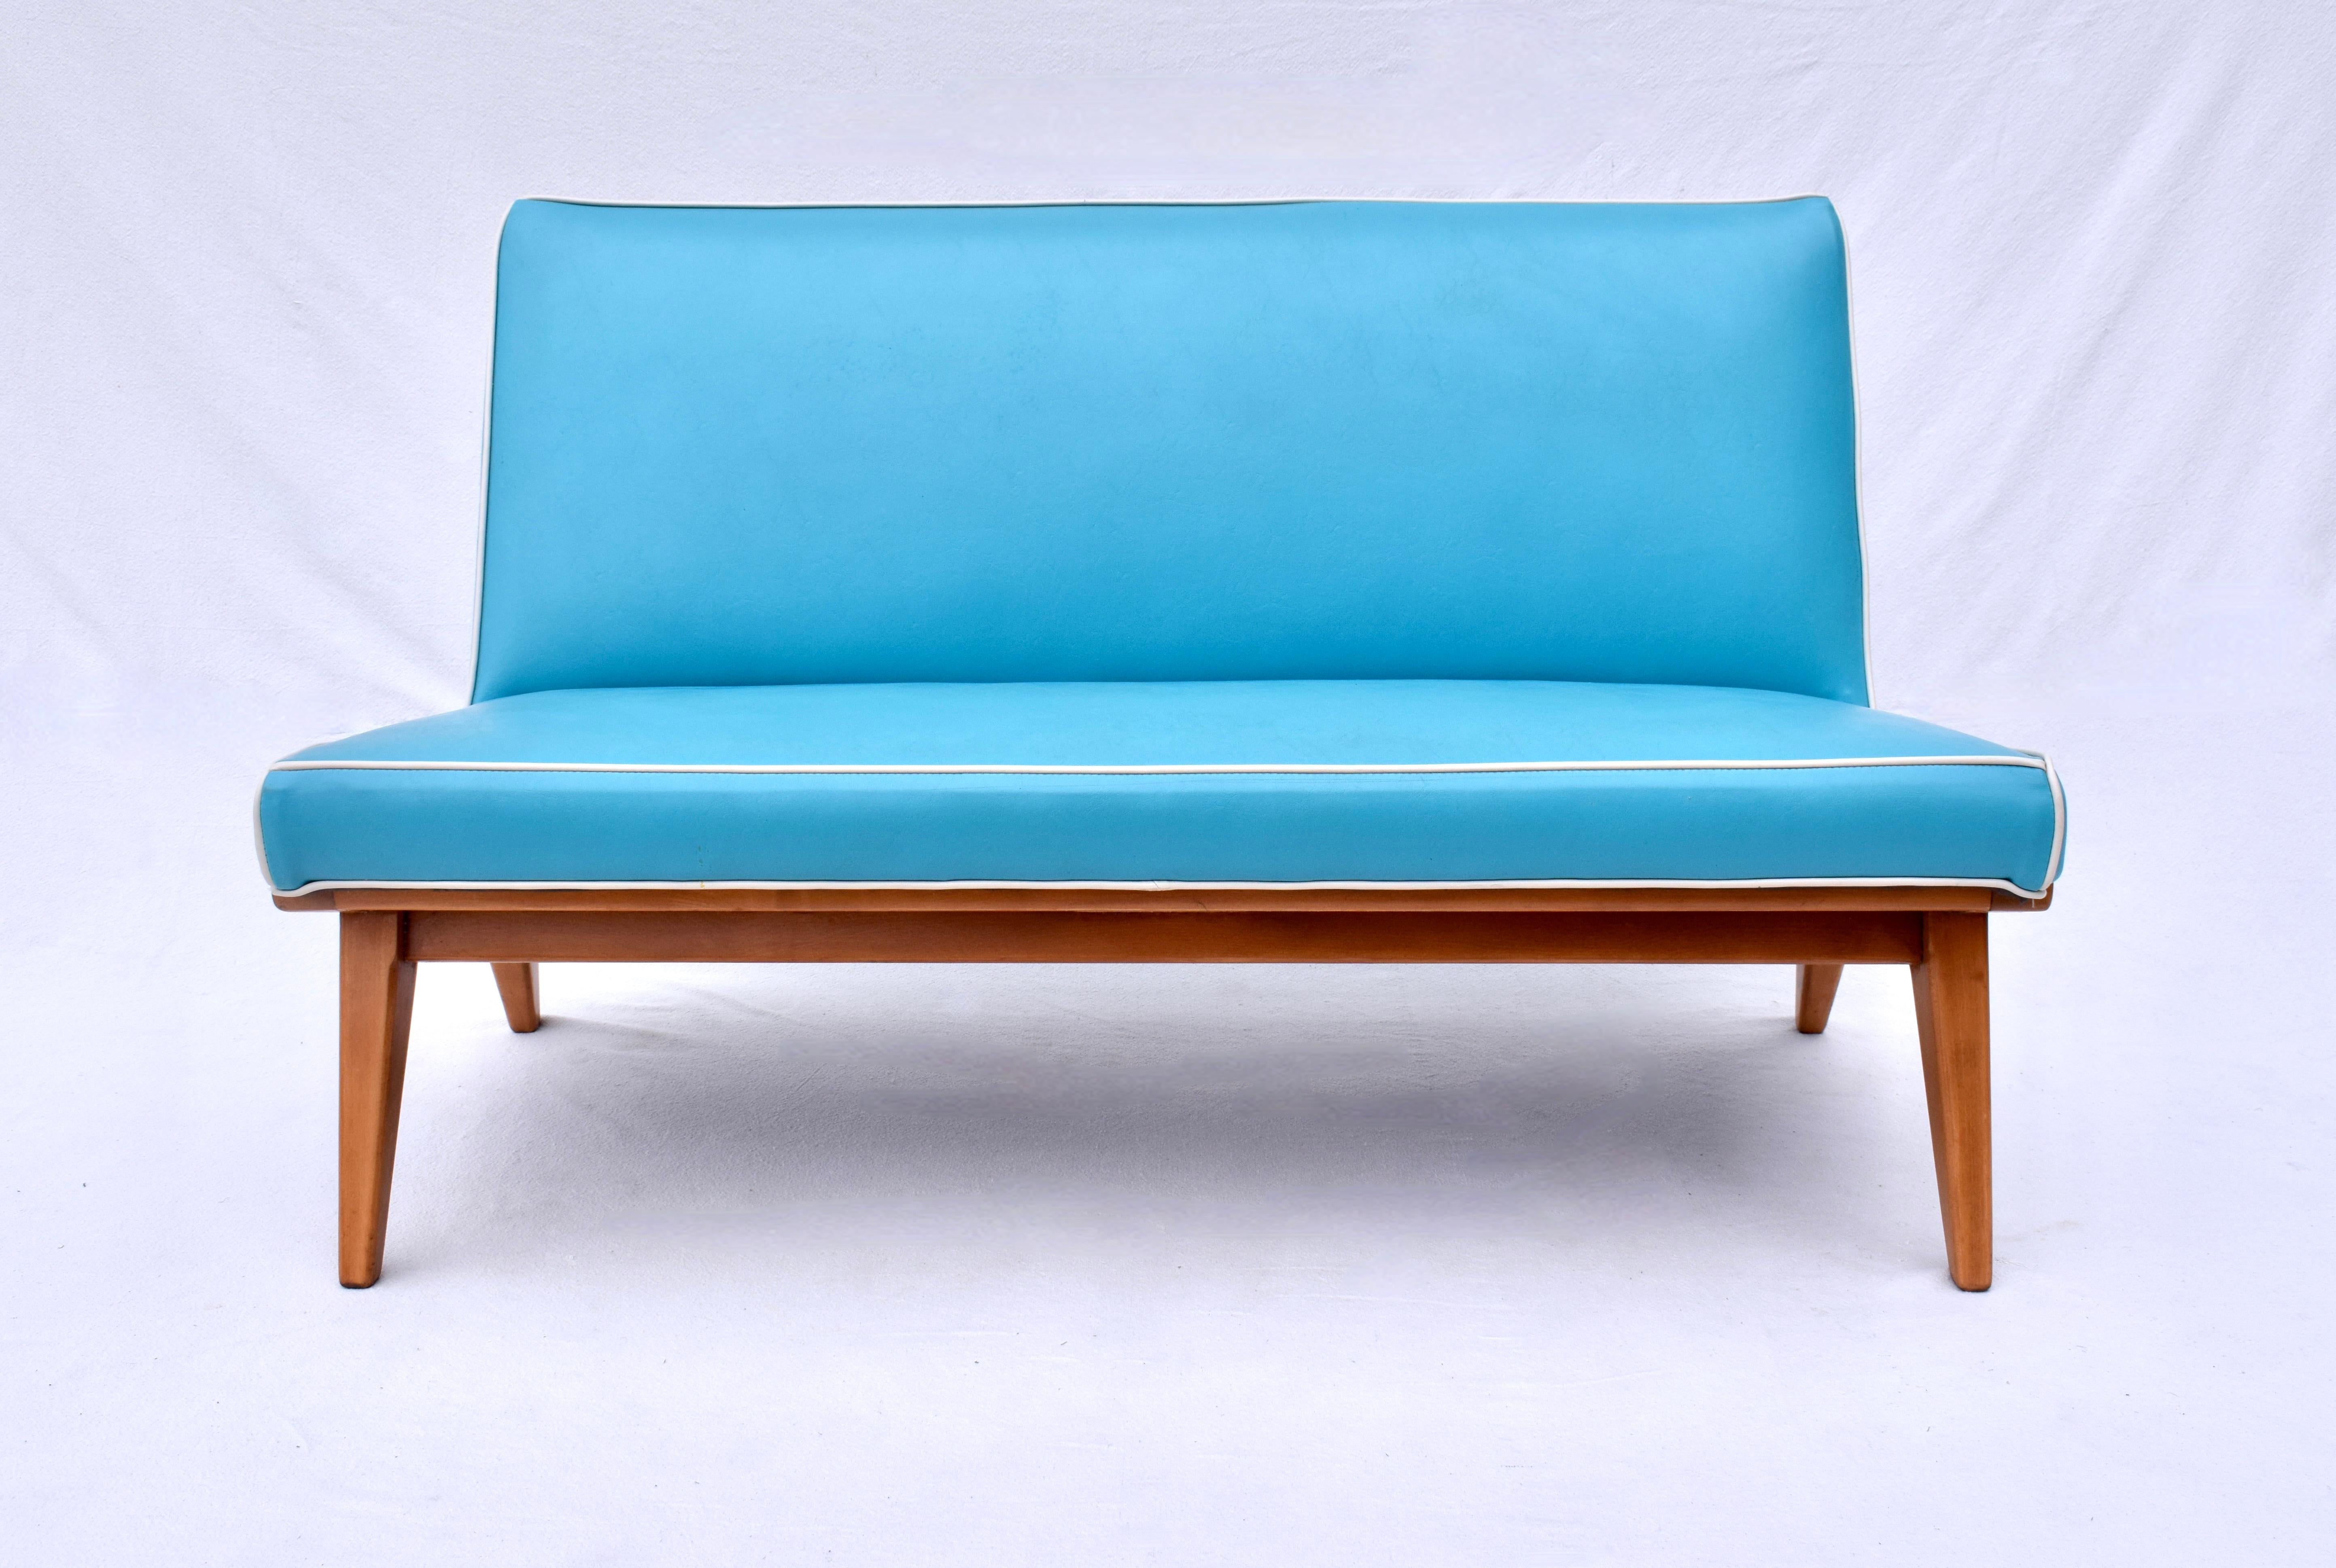 Klassisches frühes Sofa von Knoll Associates, entworfen von Jens Risom in den frühen 1940er Jahren. Das Gestell aus massiver Birke mit schlanken, abgewinkelten und sich verjüngenden Beinen trägt einen bequemen, freitragenden Sitz mit Originalfedern.